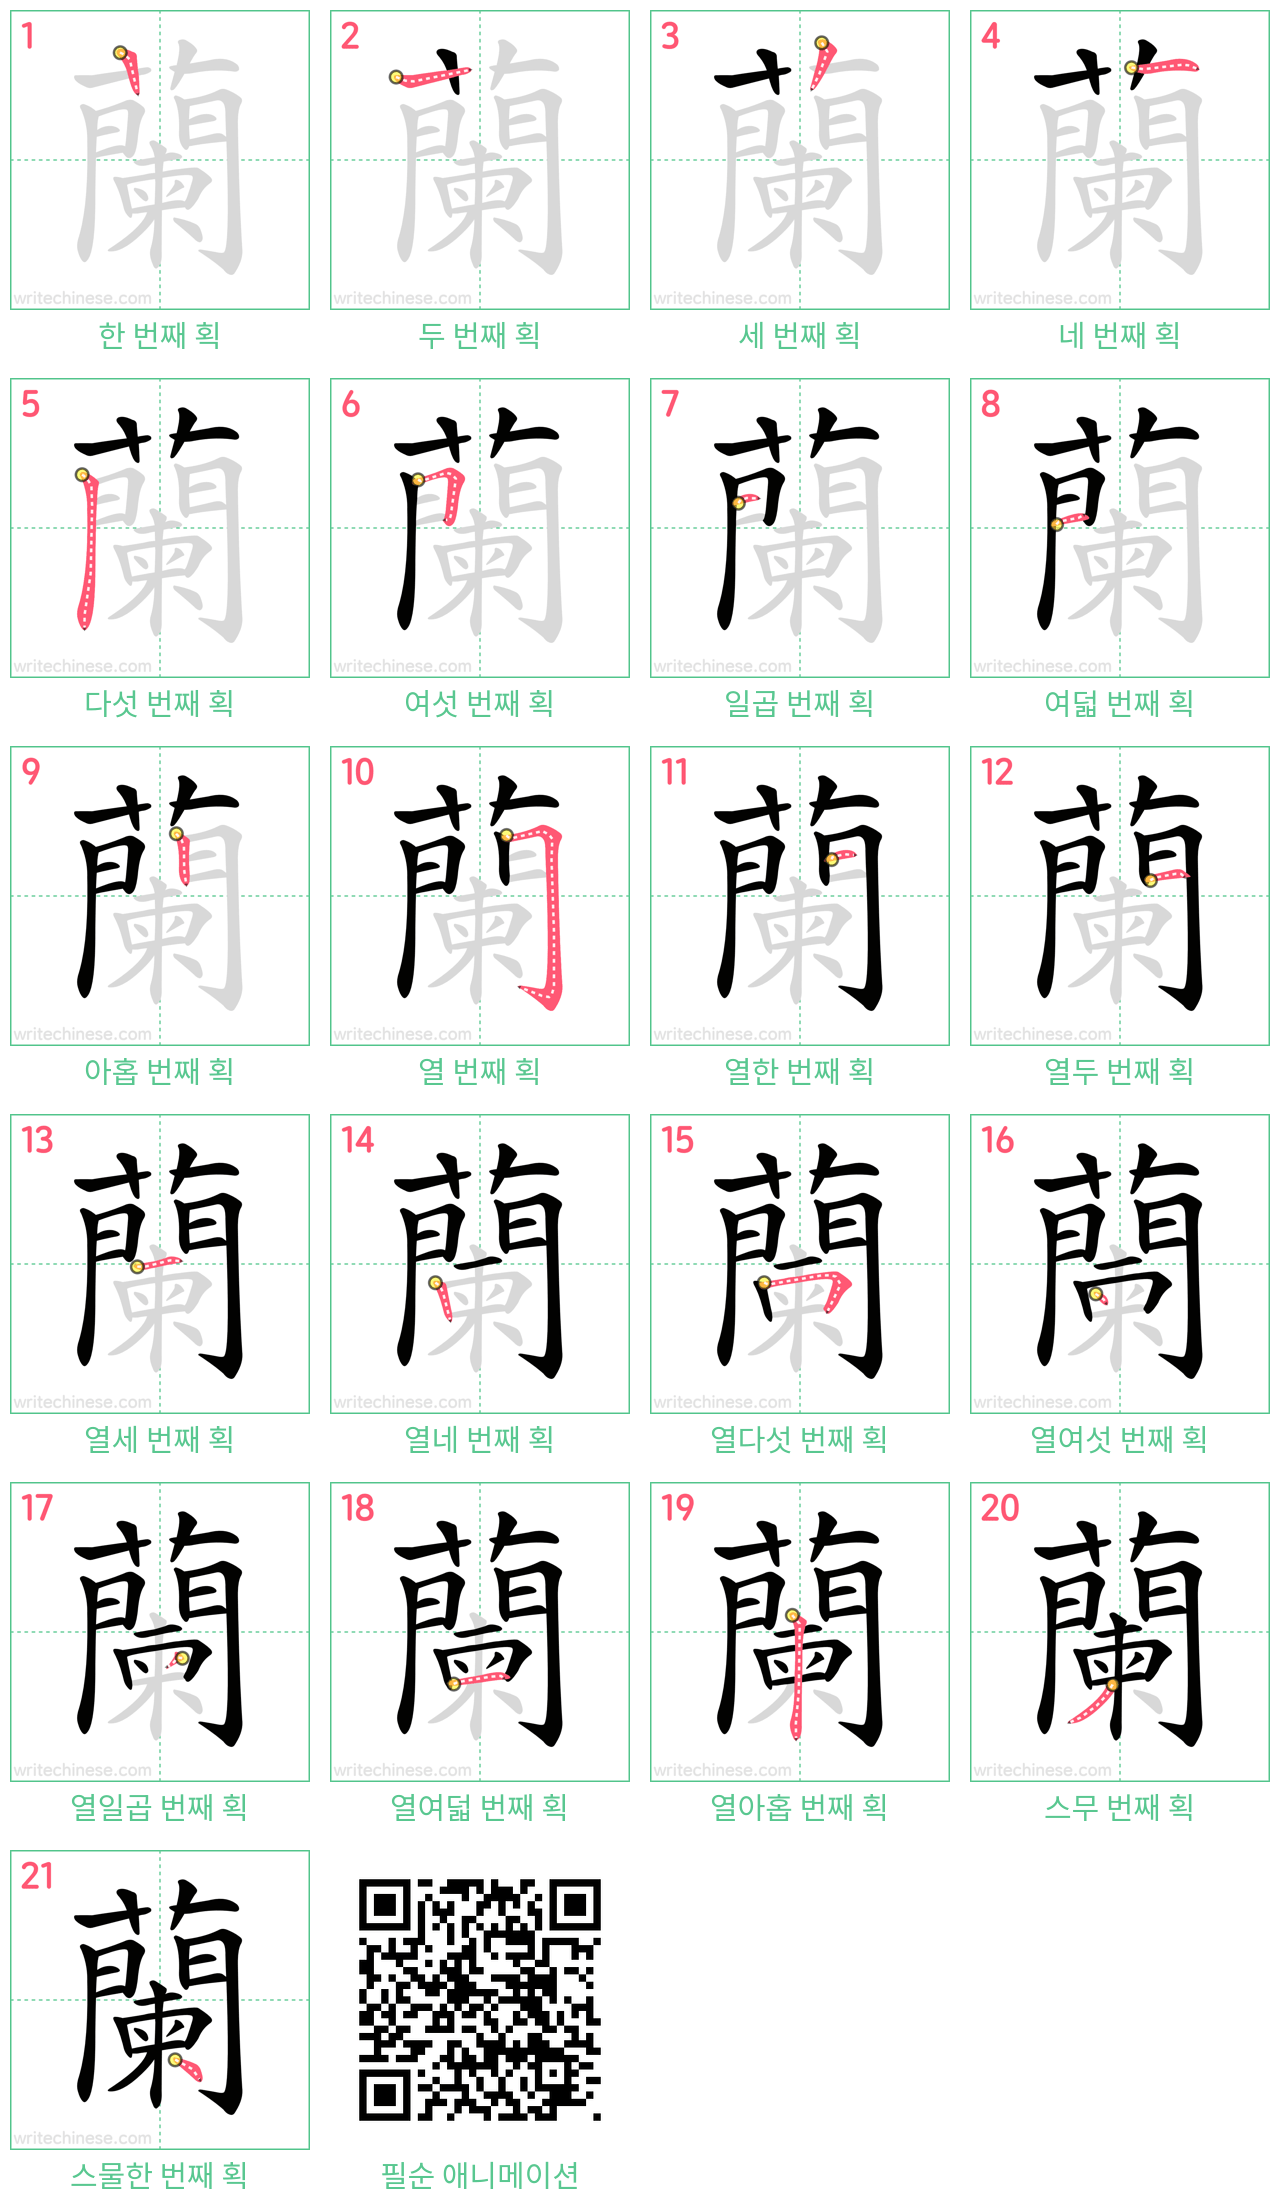 蘭 step-by-step stroke order diagrams